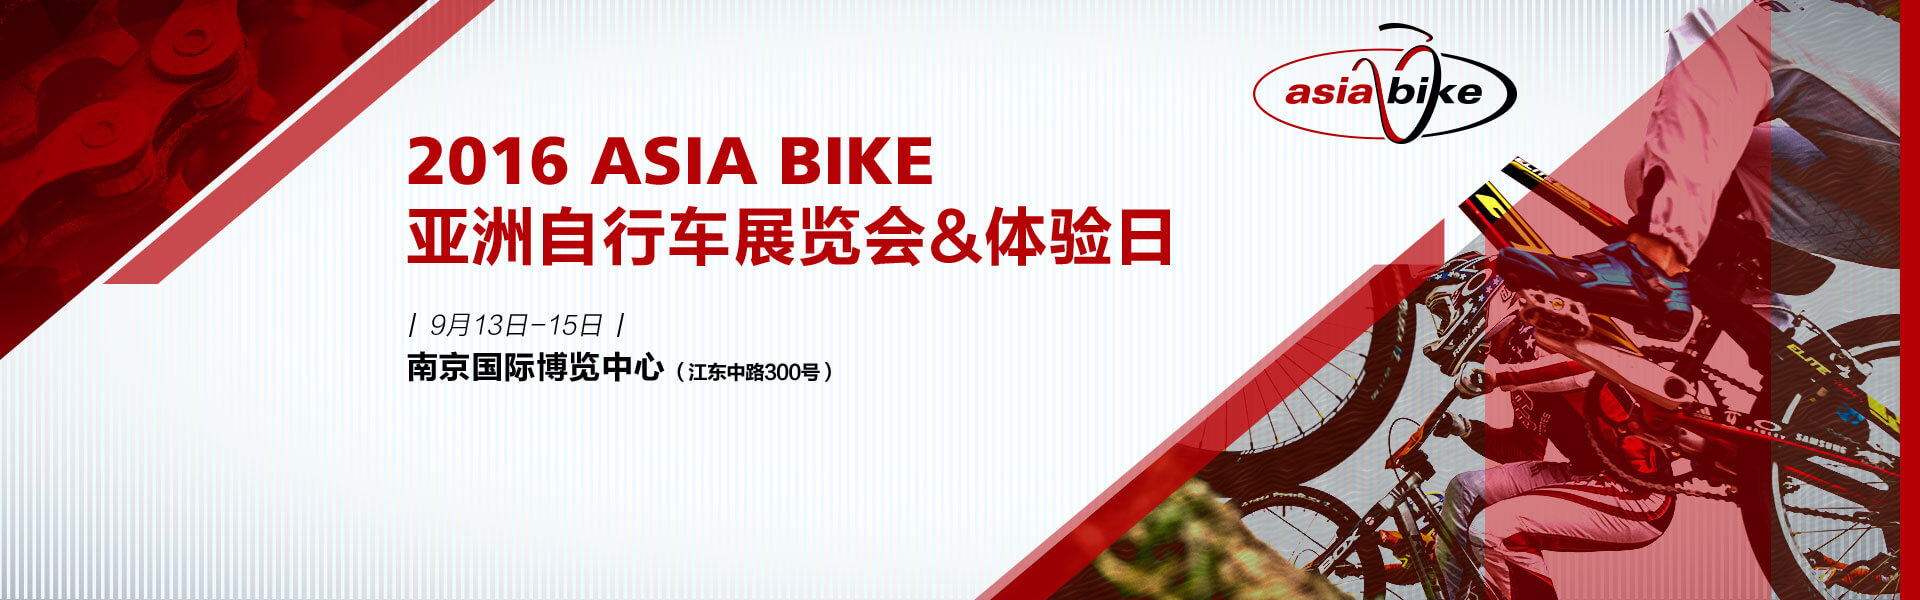 亚洲自行车展览会&体验日